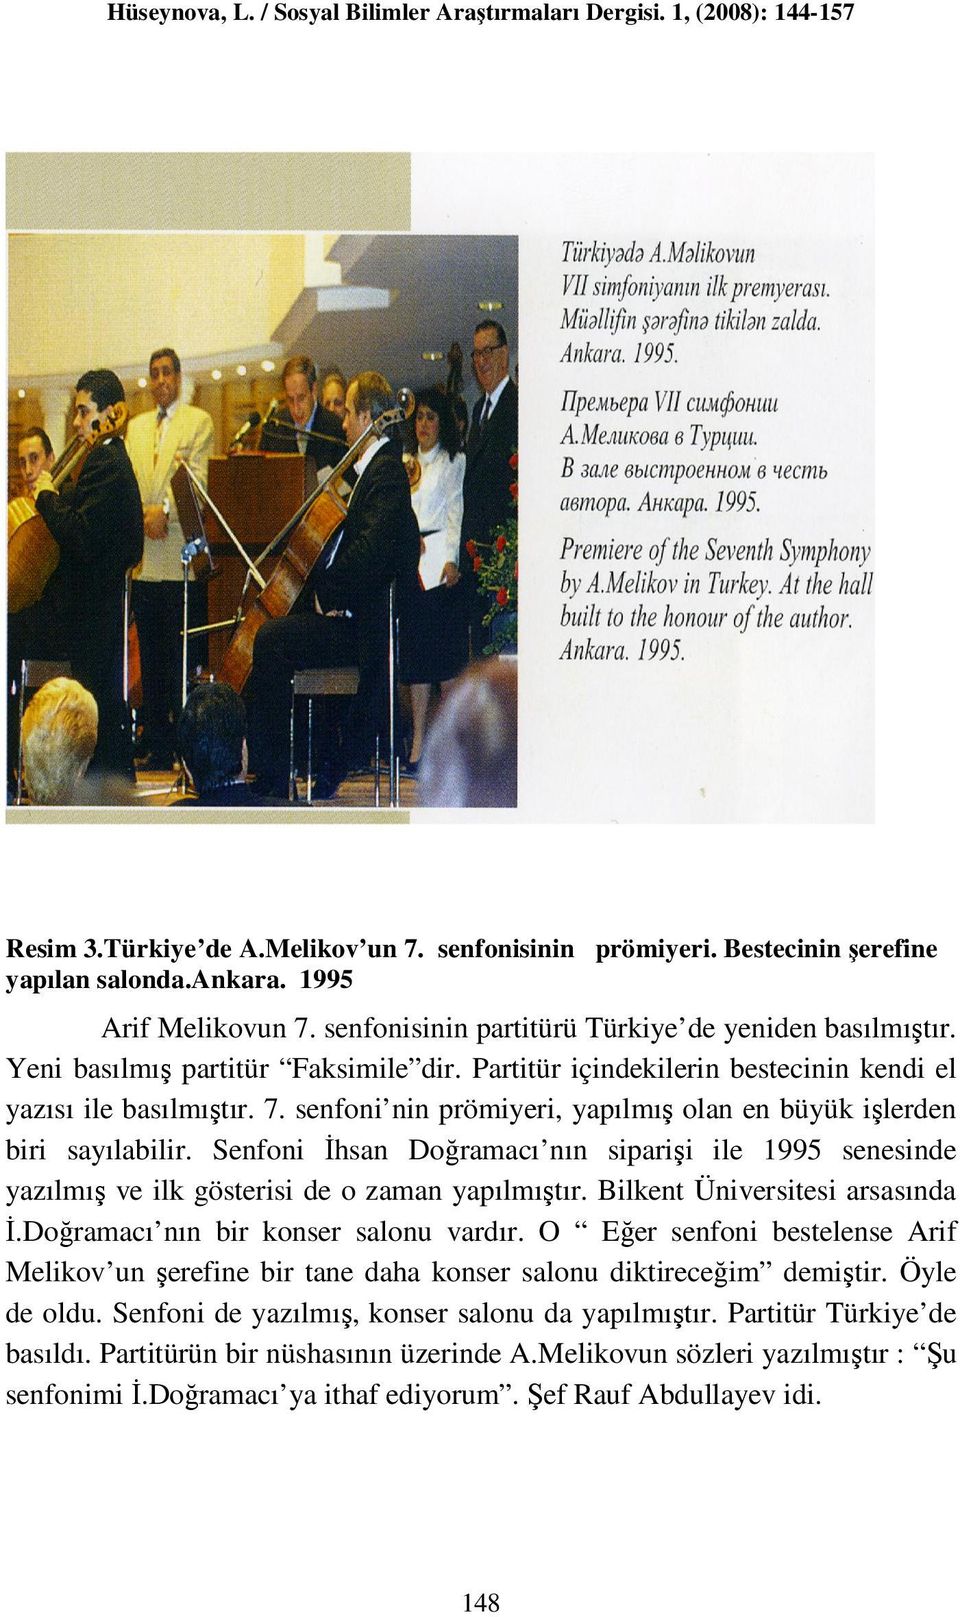 Senfoni İhsan Doğramacı nın siparişi ile 1995 senesinde yazılmış ve ilk gösterisi de o zaman yapılmıştır. Bilkent Üniversitesi arsasında İ.Doğramacı nın bir konser salonu vardır.